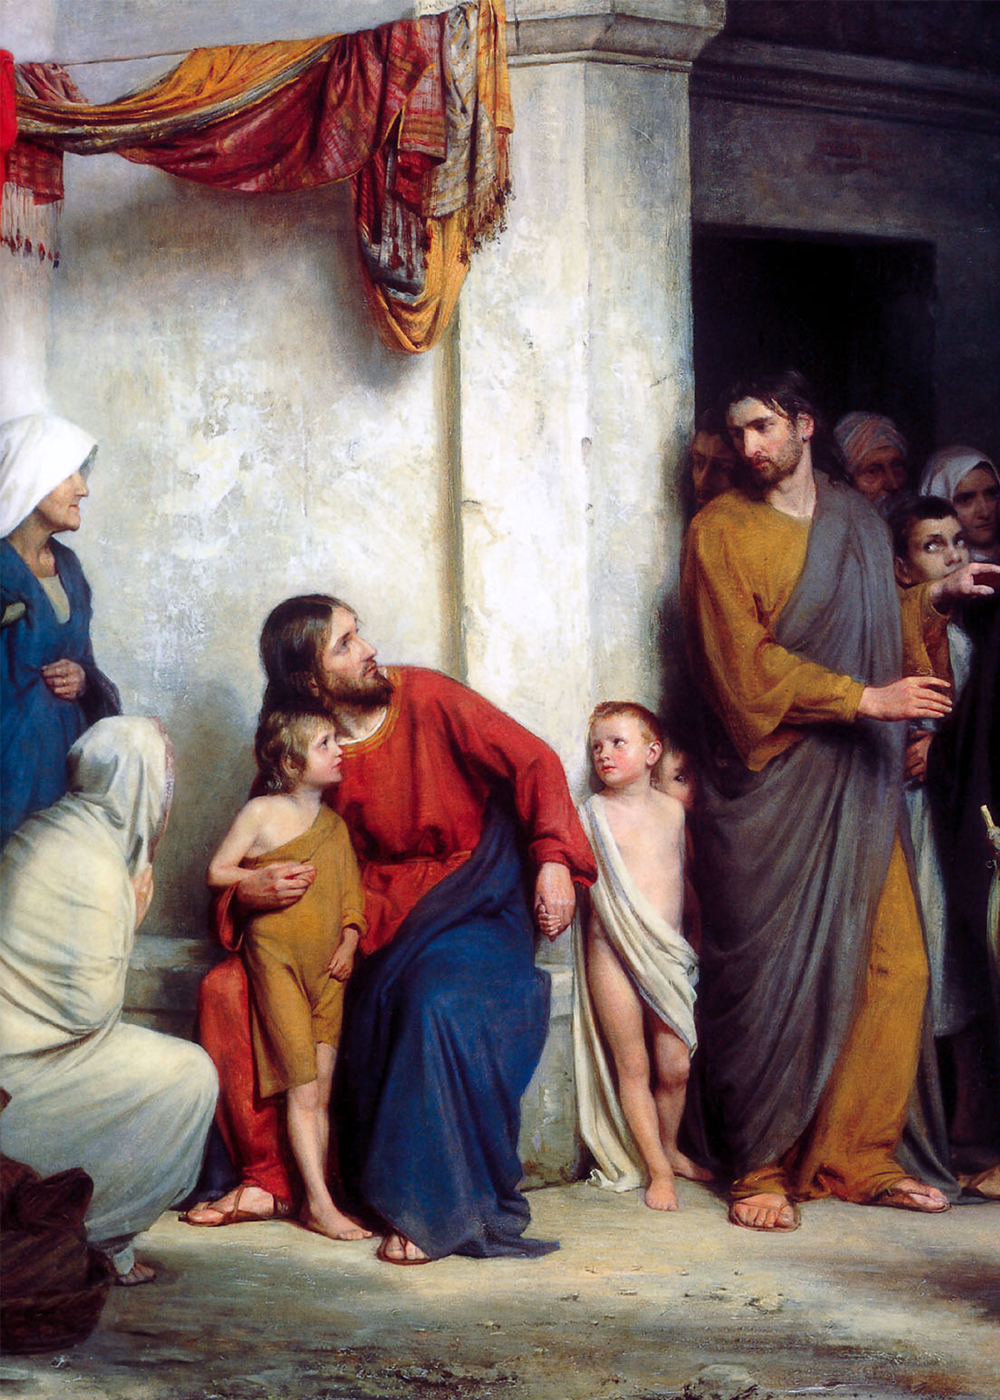 Christ with Children by Carl Heinrich Bloch